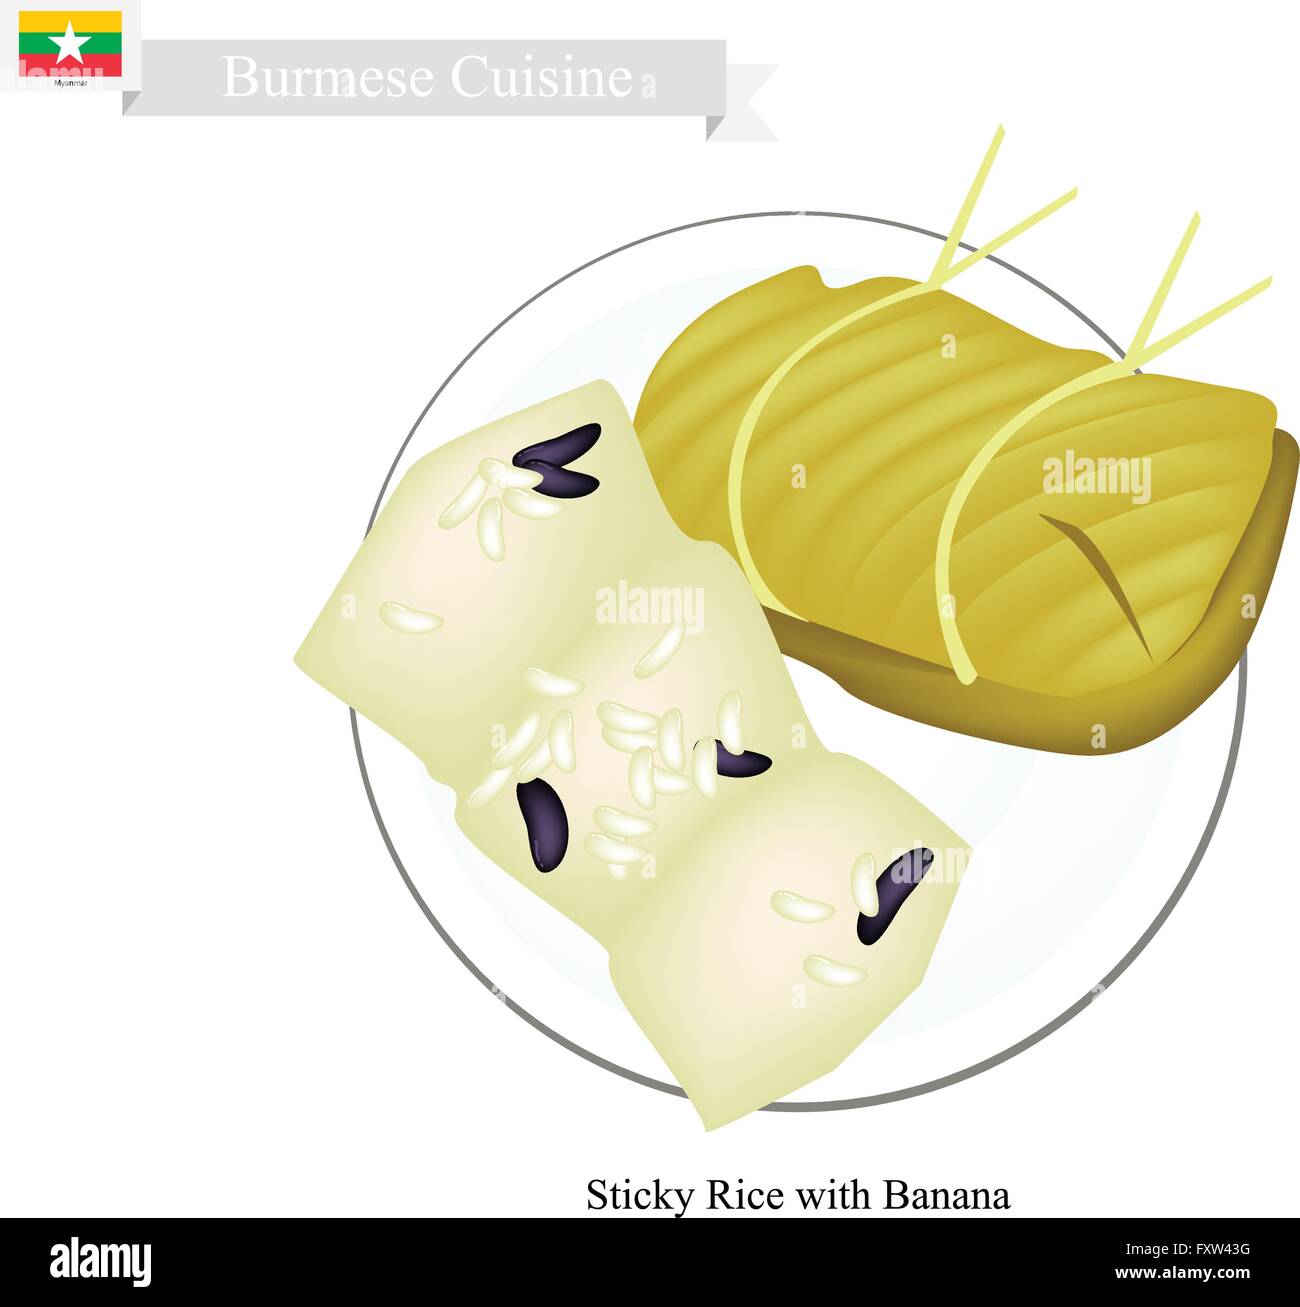 La cuisine birmane, les bananes dans le riz collant Wrap avec des feuilles de bananier. L'un des plus populaires Dessert au Myanmar. Illustration de Vecteur